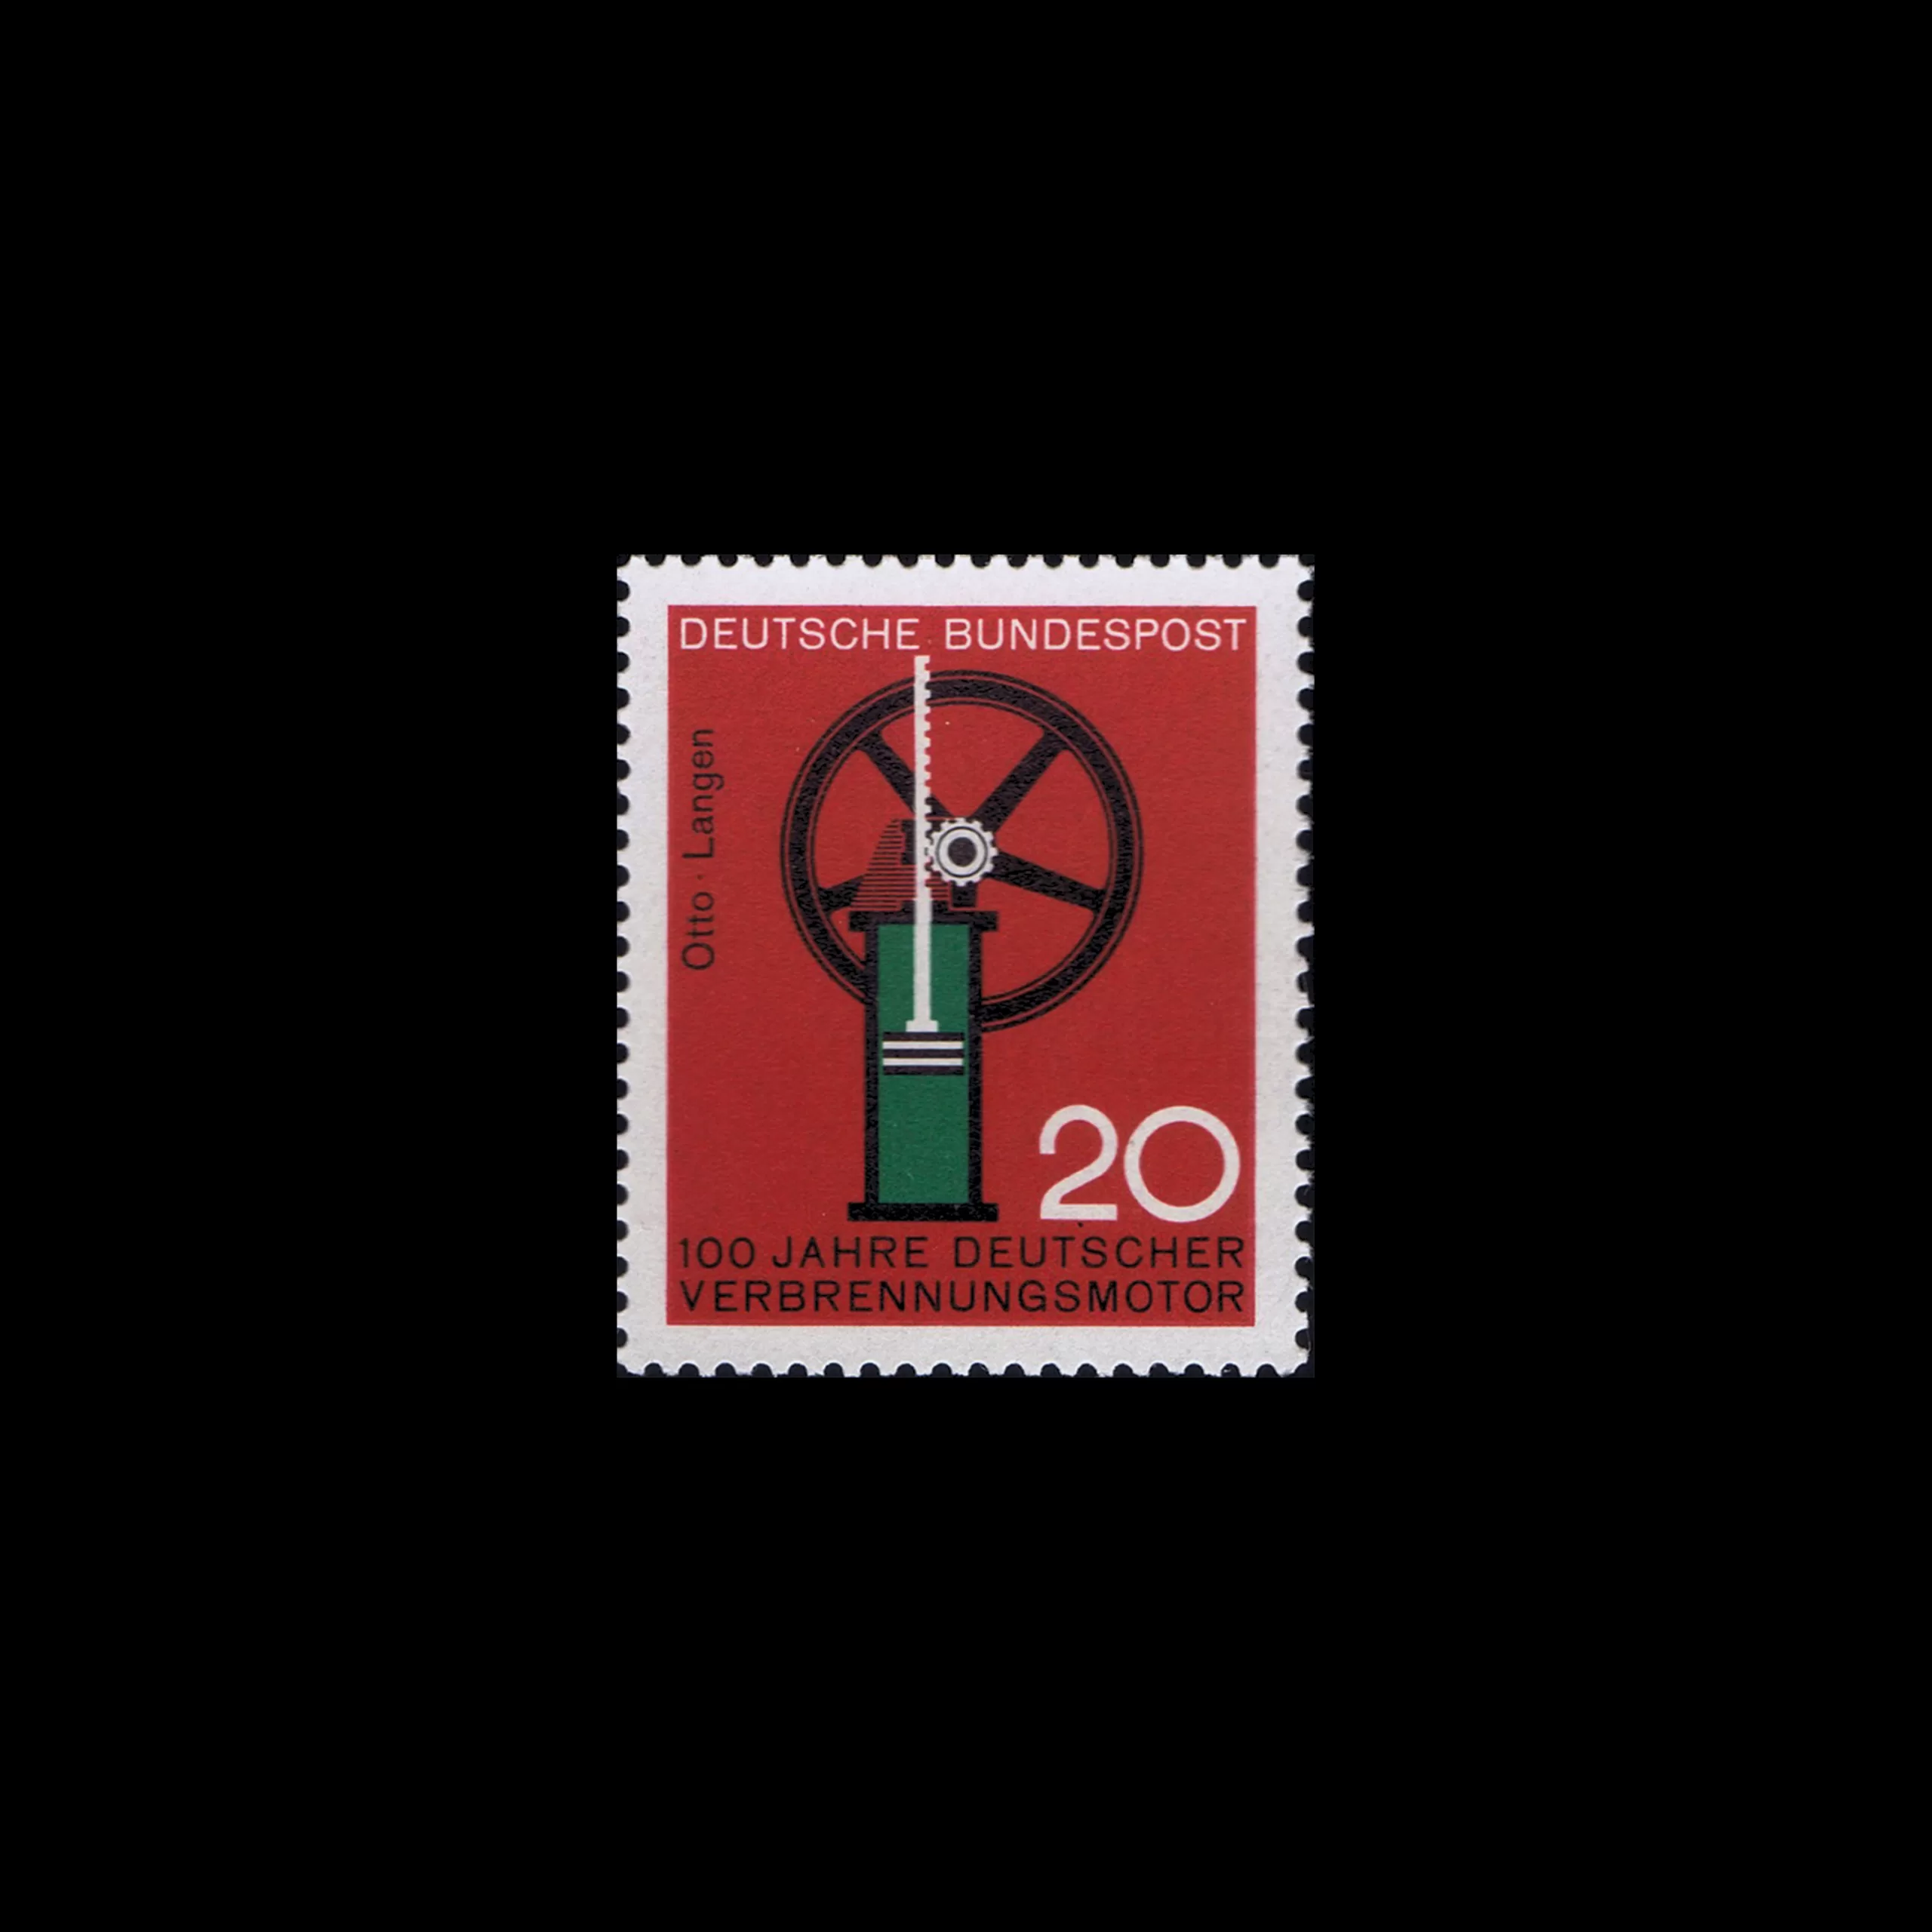 Gas Engine, German Stamp, 1964. Designed by Karl Oskar Blase